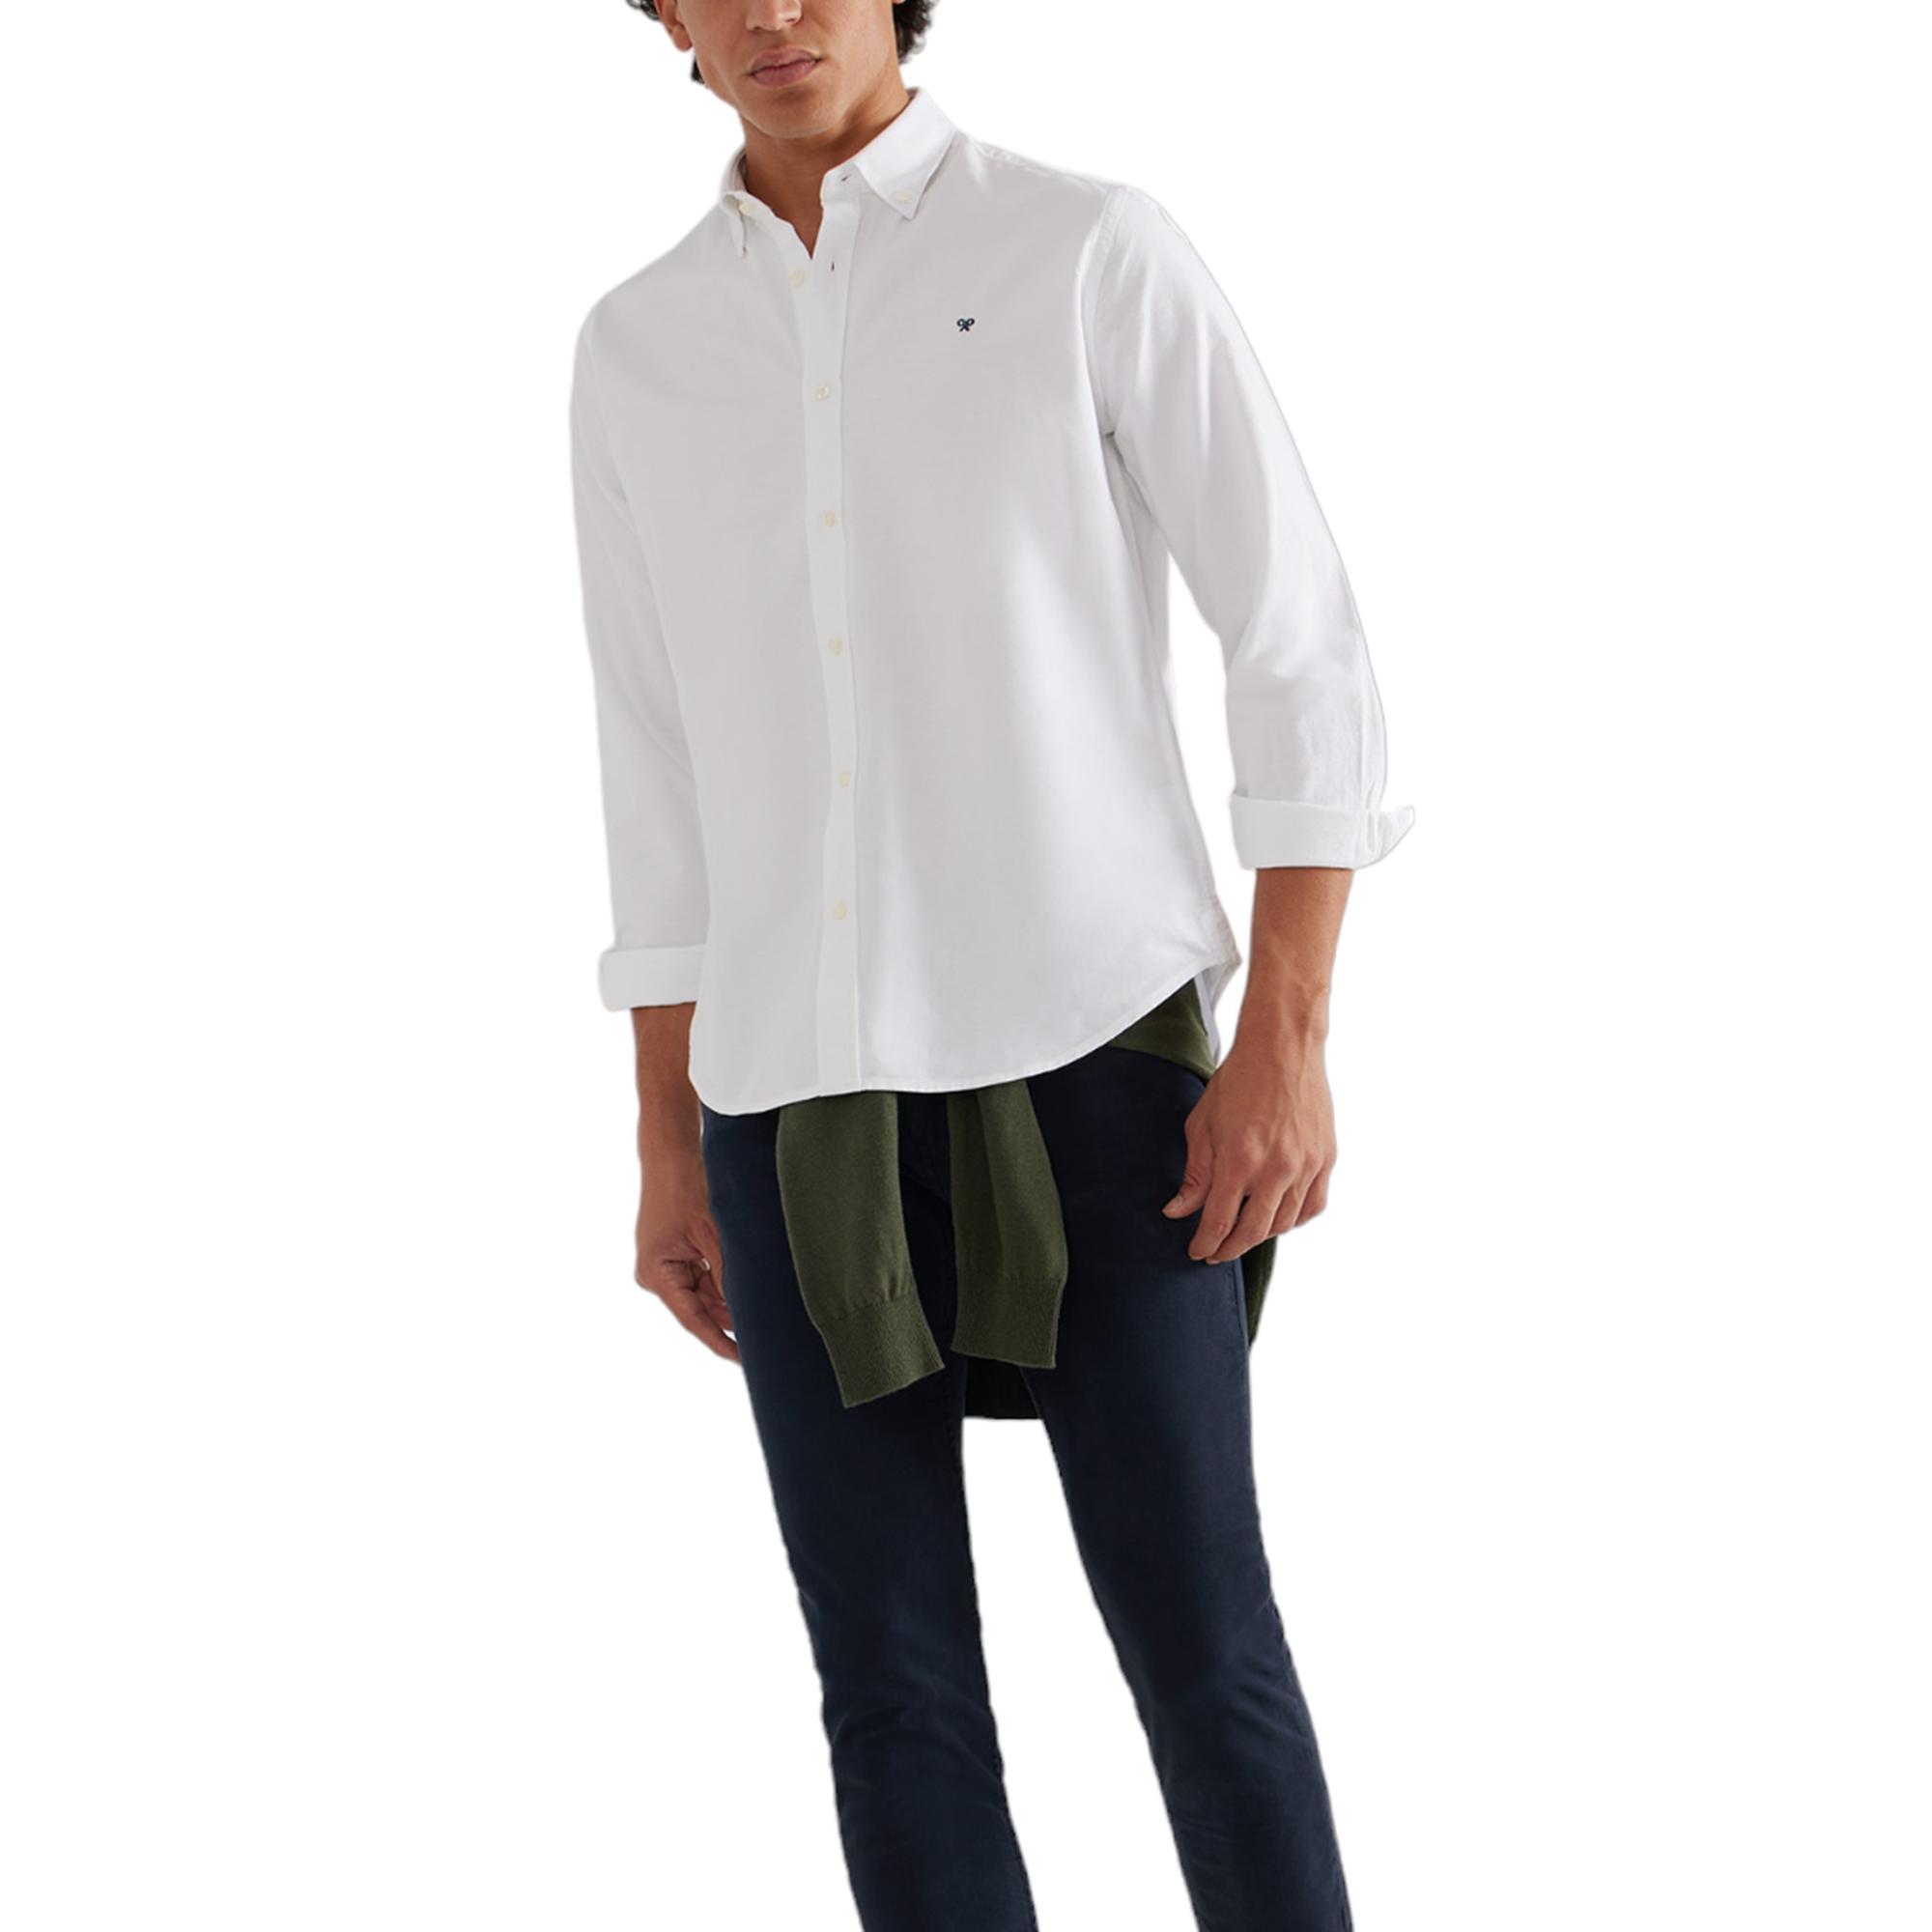 Silbon - Silbon - Camisa sport oxford blanca para Hombre